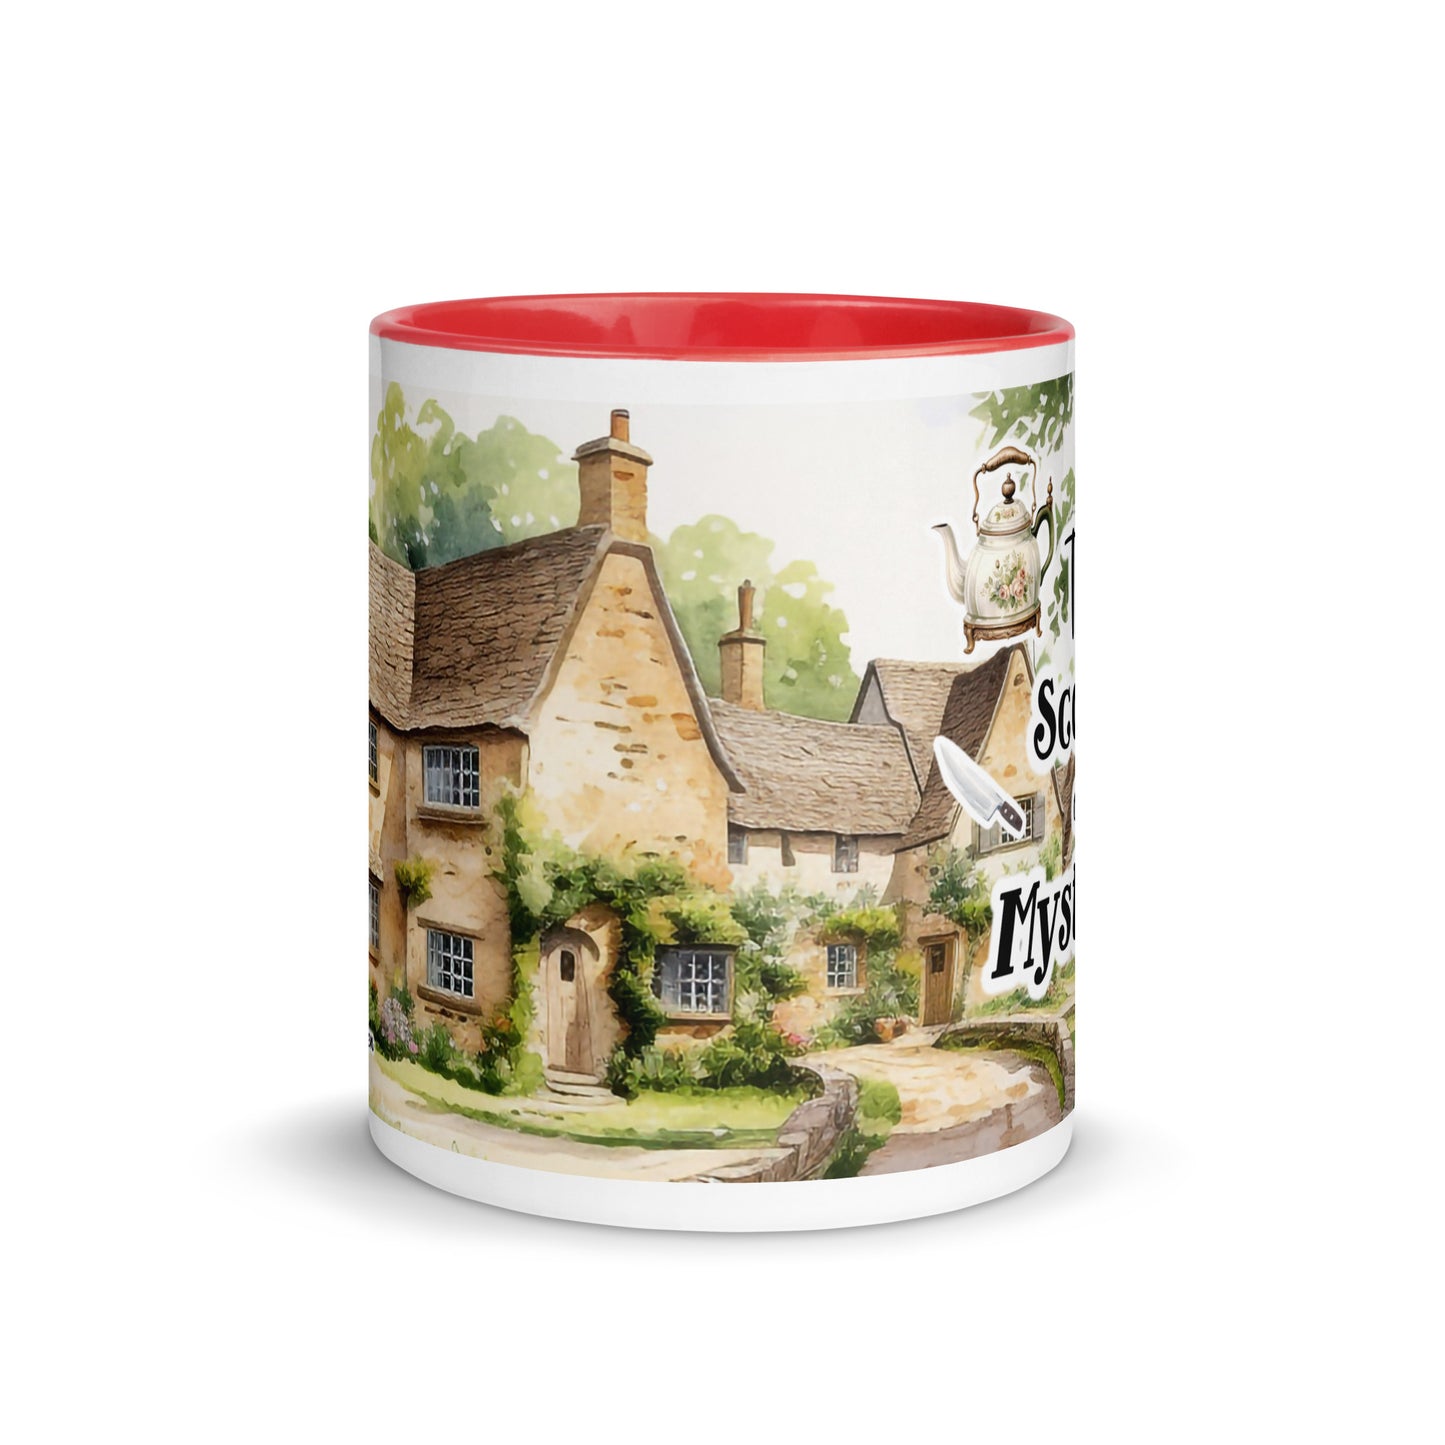 Tea Scones and Mysteries Cozy Bookish Mug